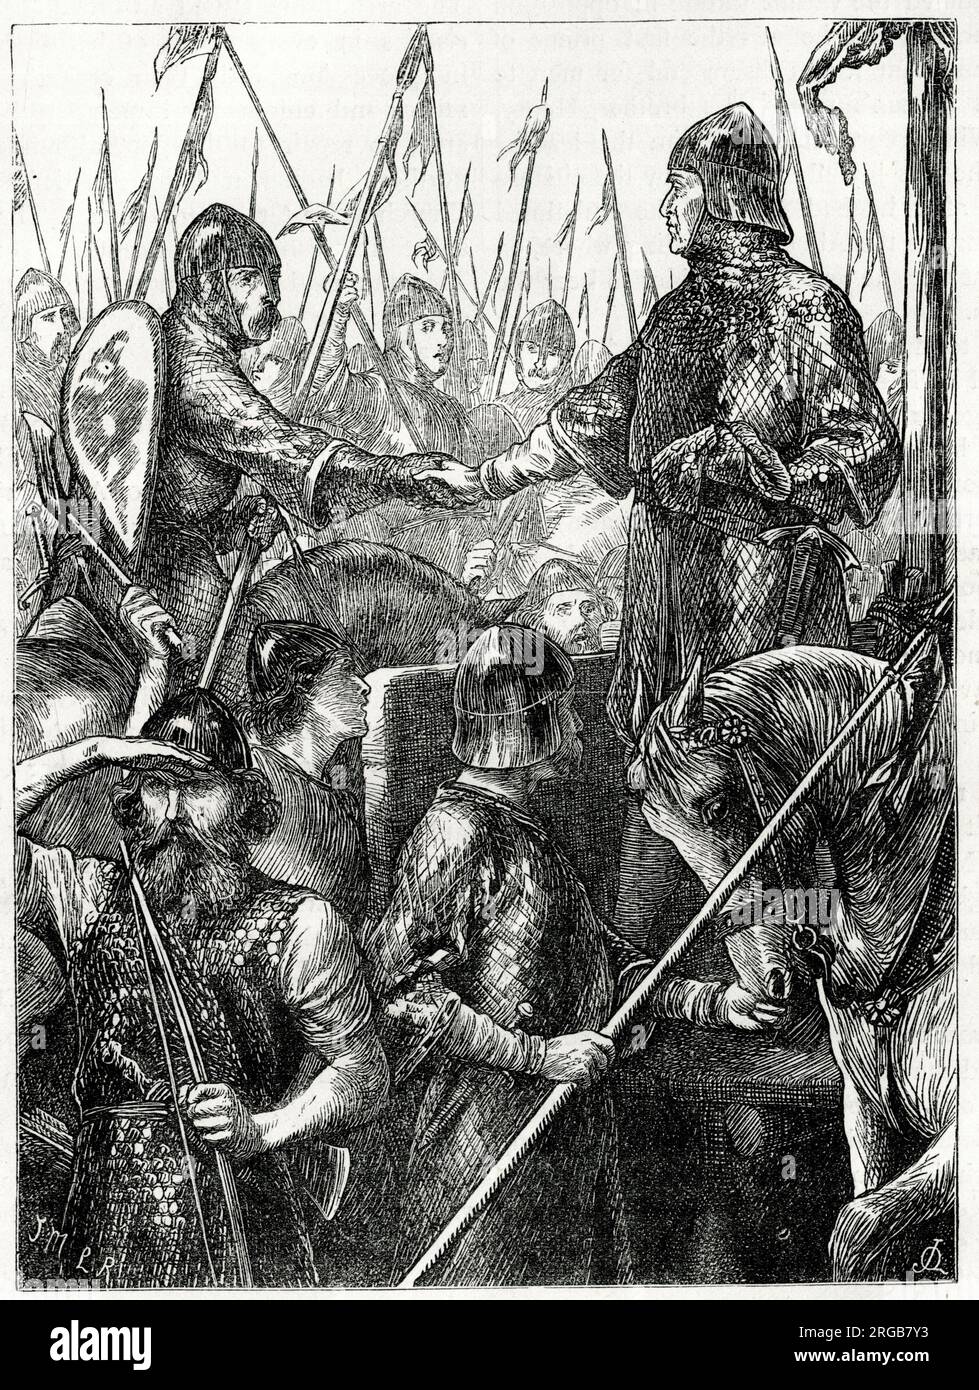 Walter espec (d'espec) und der Graf von Aumale (Albemarle) bei der Schlacht um den Standard (Schlacht von Northallerton), 22. August 1138, als englische Streitkräfte unter William von Aumale eine schottische Armee unter König David I. von Schottland abstießen. Stockfoto